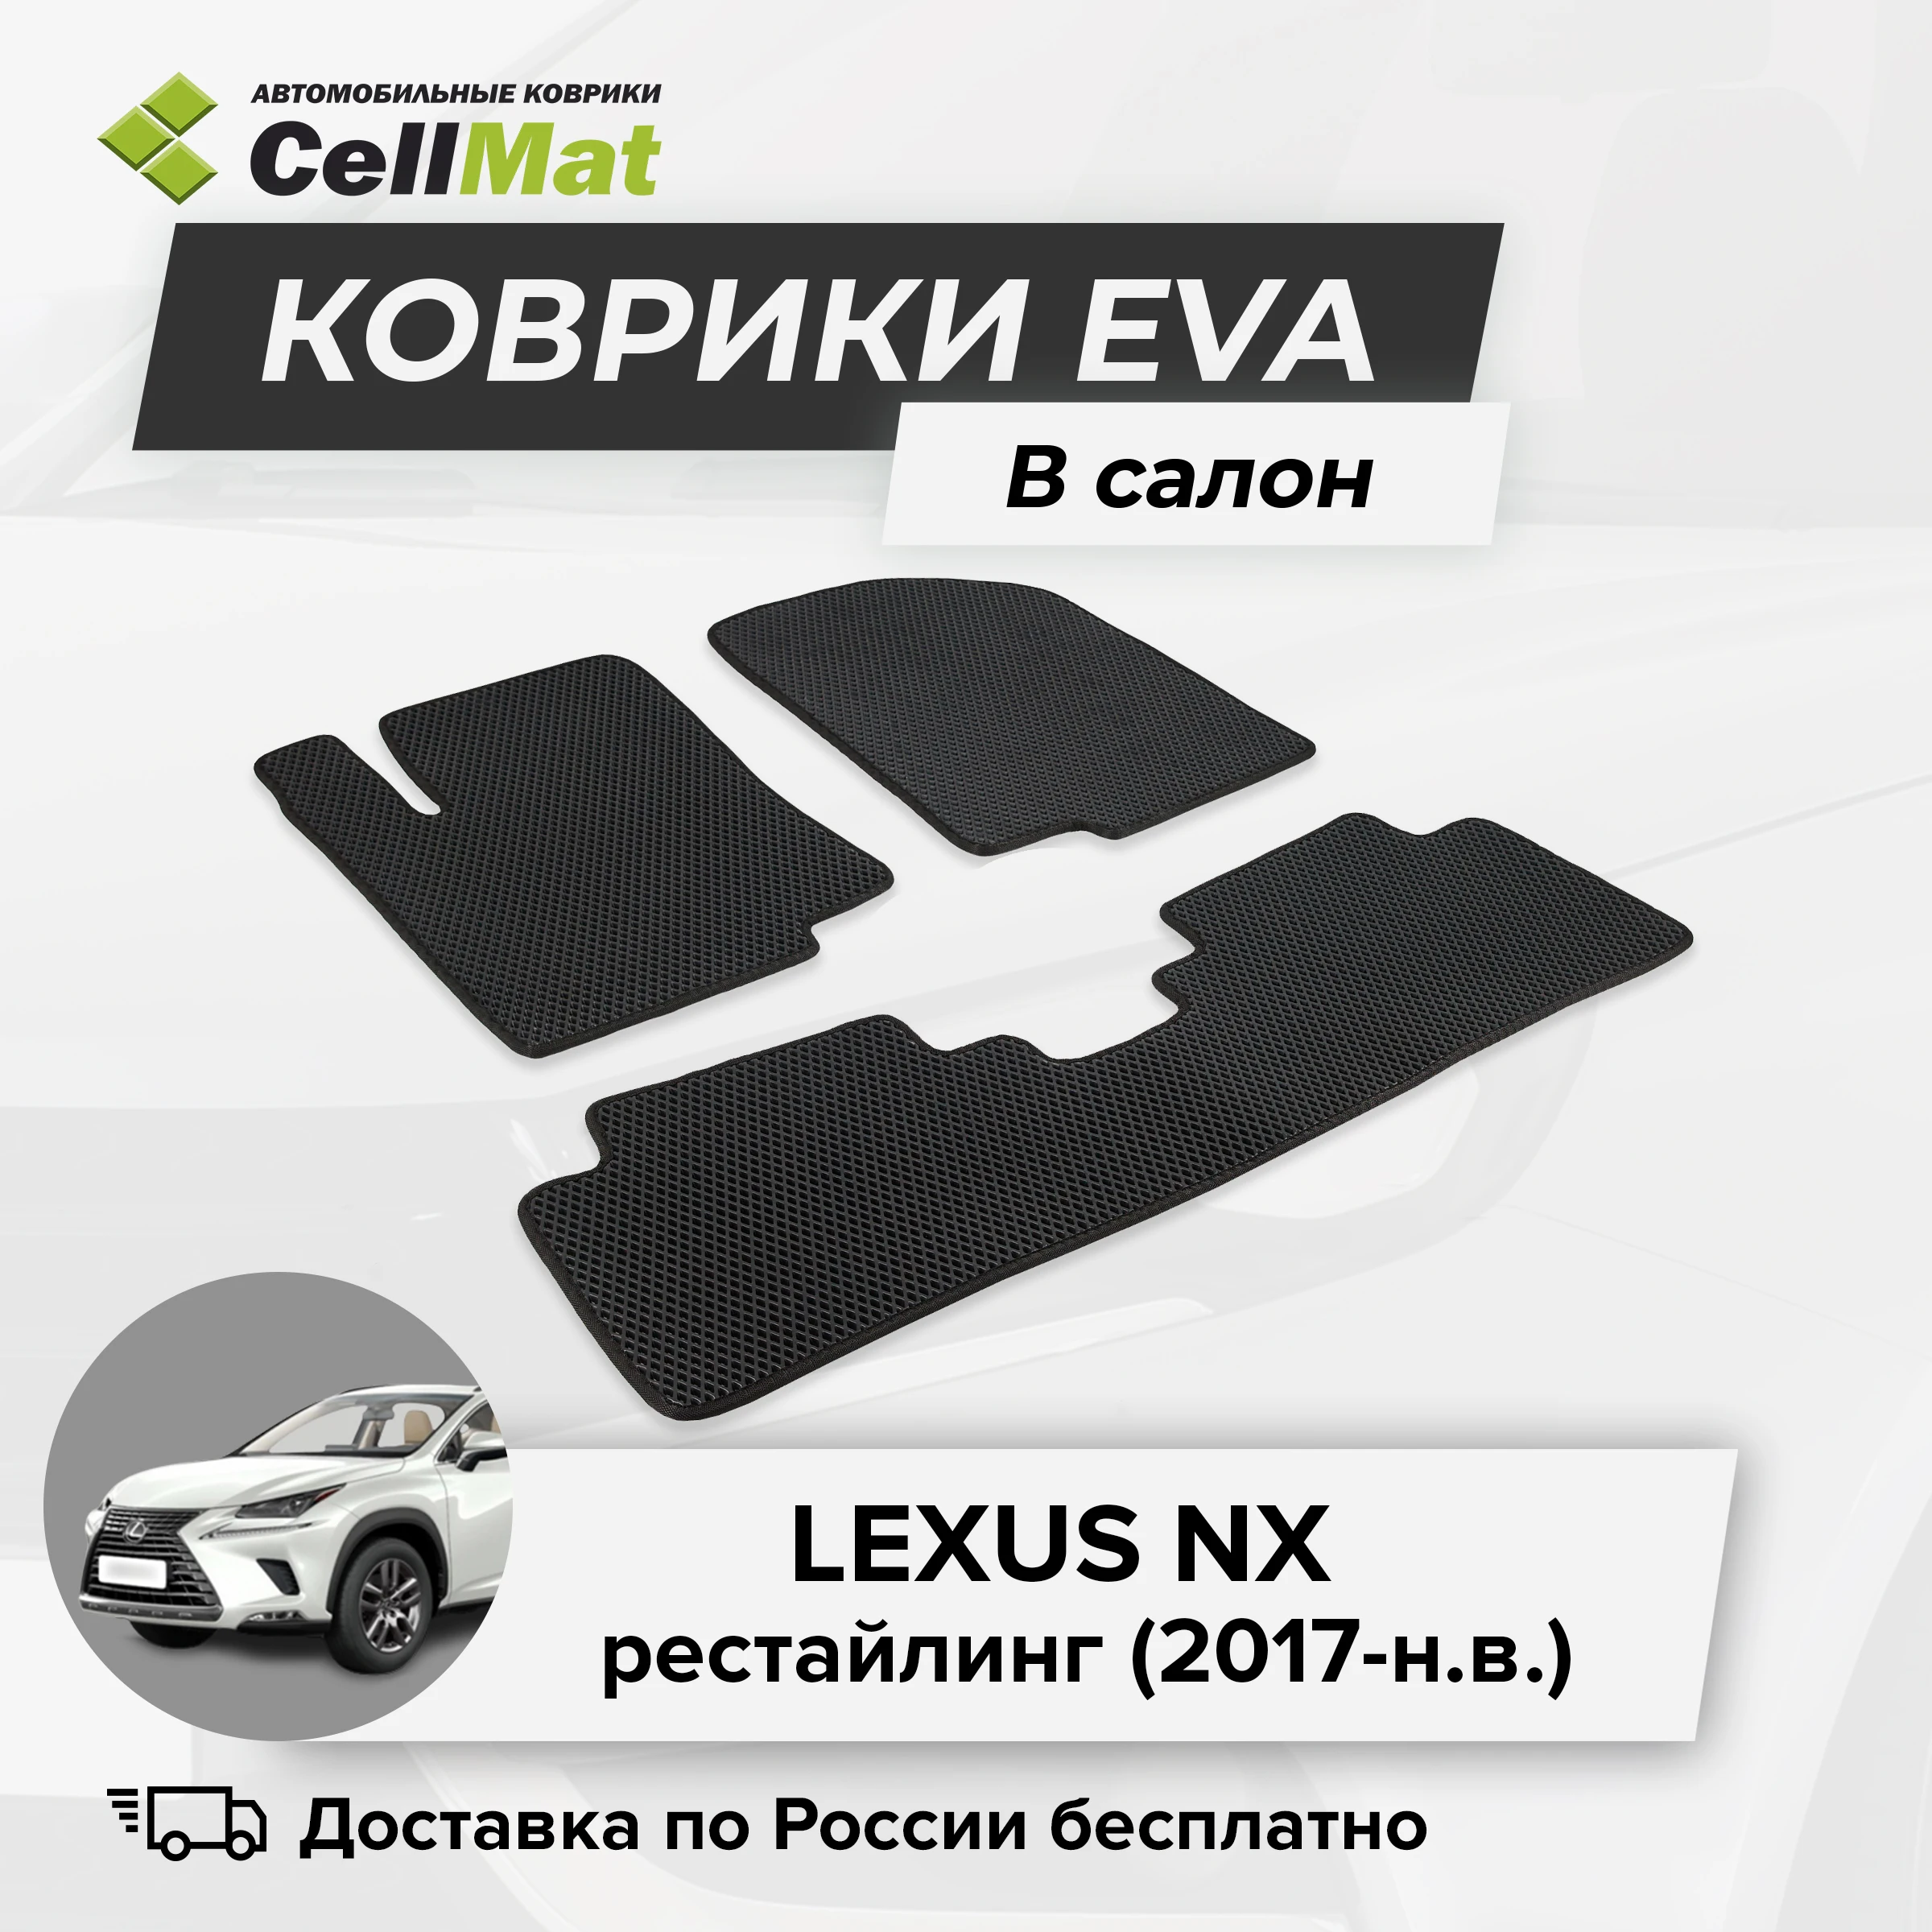 ЭВА ЕВА EVA коврики CellMat в салон Lexus NX рестайлинг Лексус 2017-н.в. |